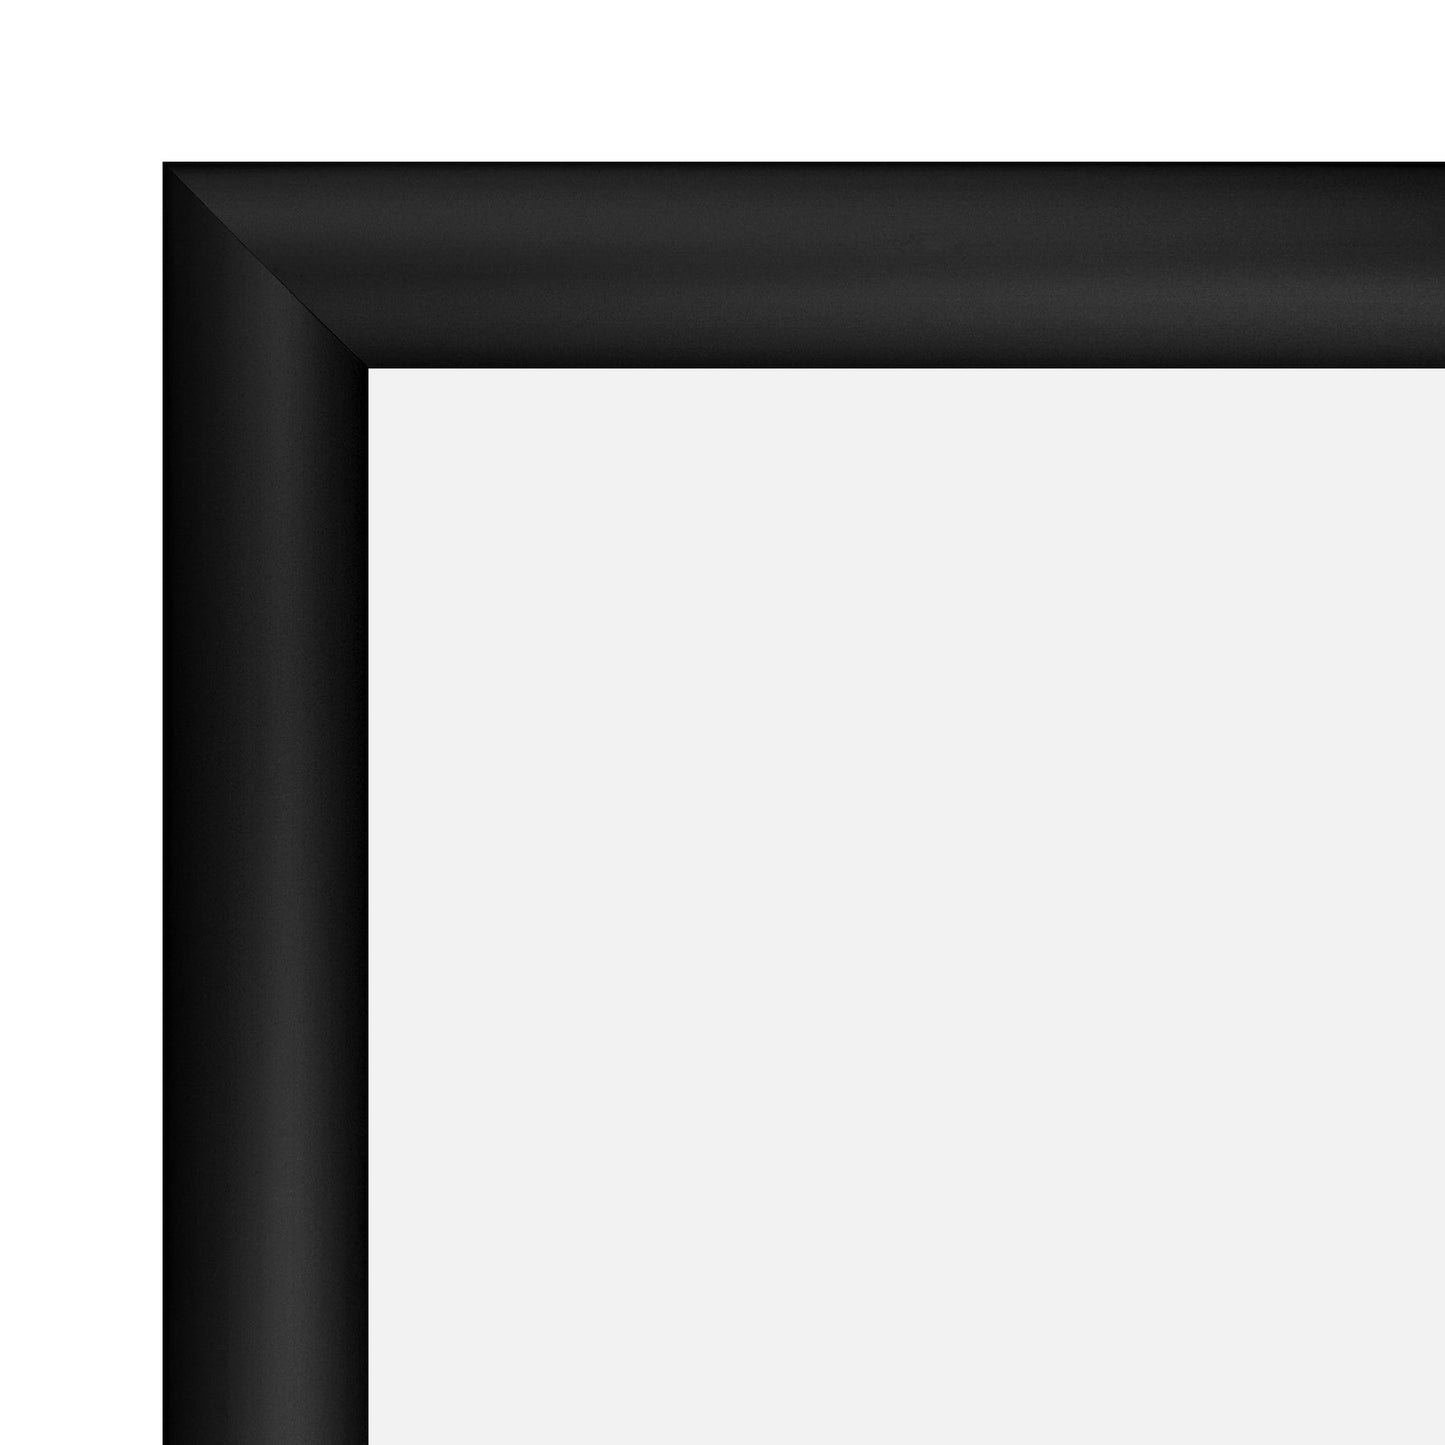 11x17 Black TRADEframe Snap Frame - 1.2" Profile - Snap Frames Direct